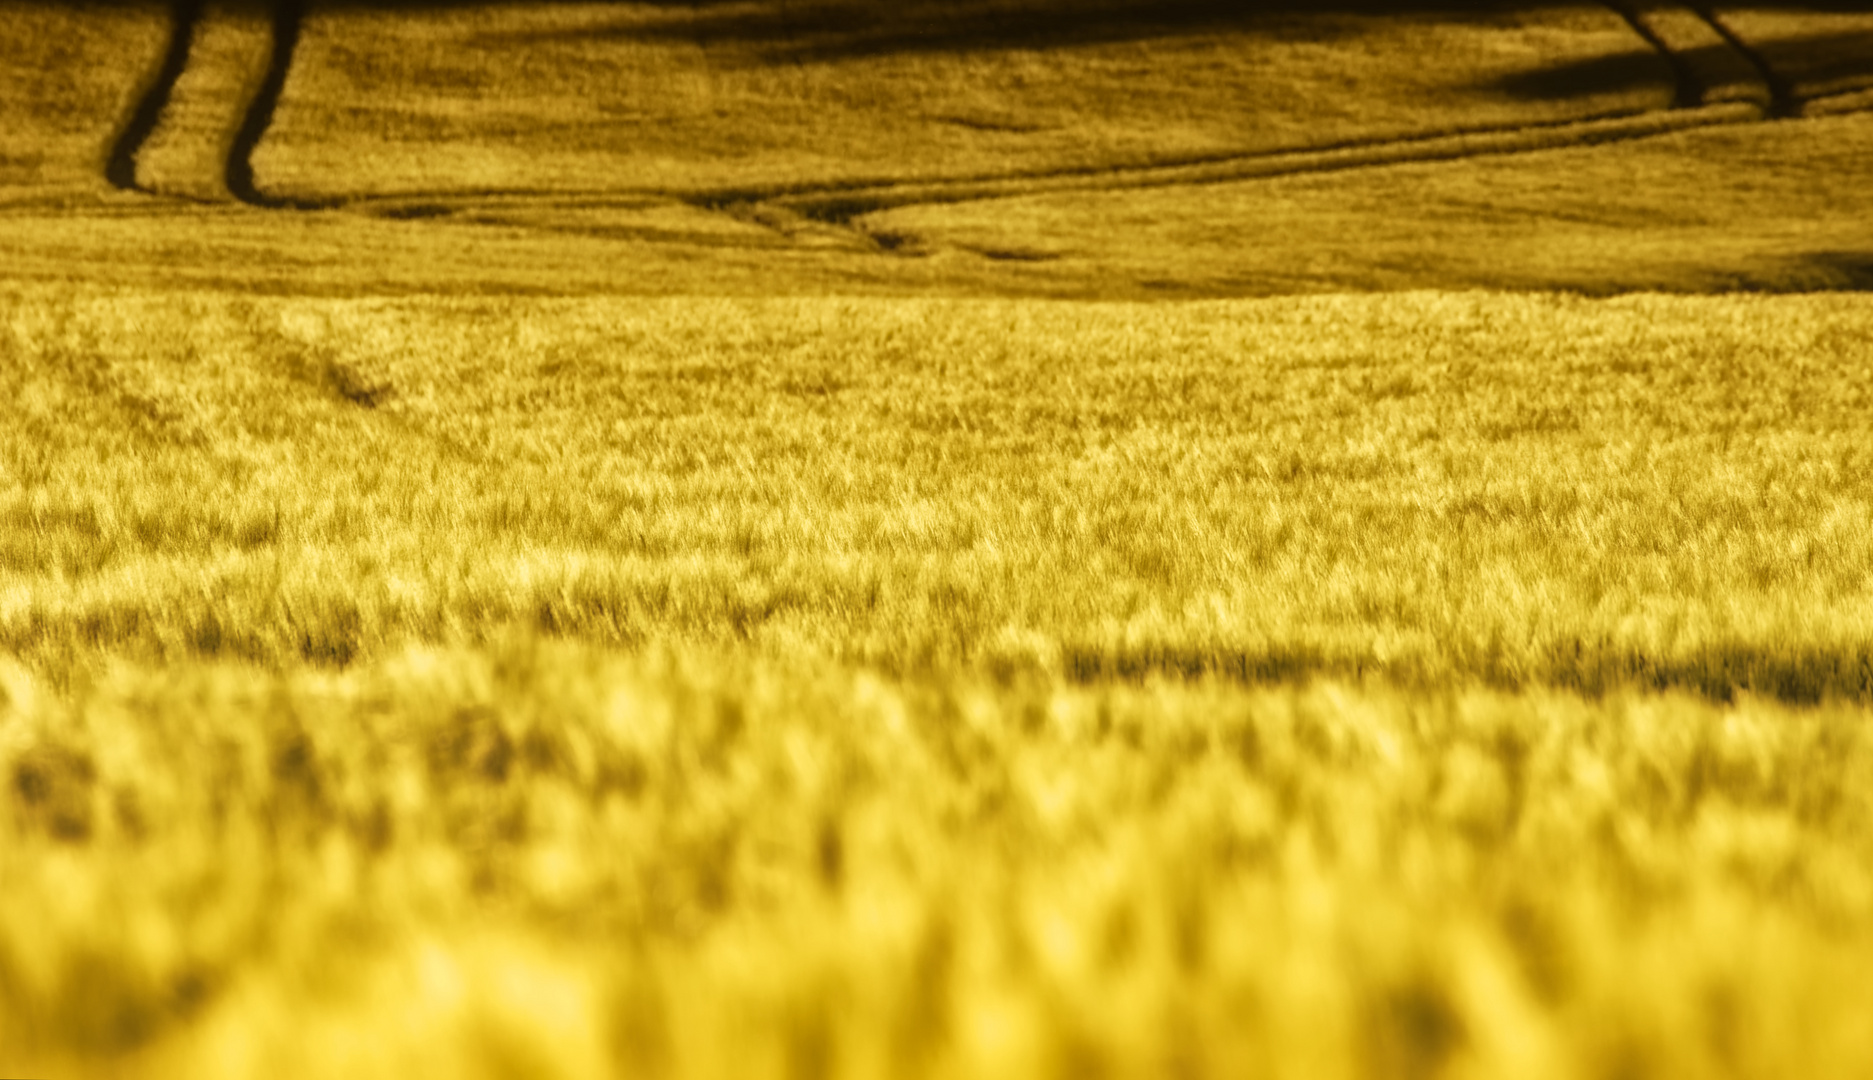 Das gelbe Feld